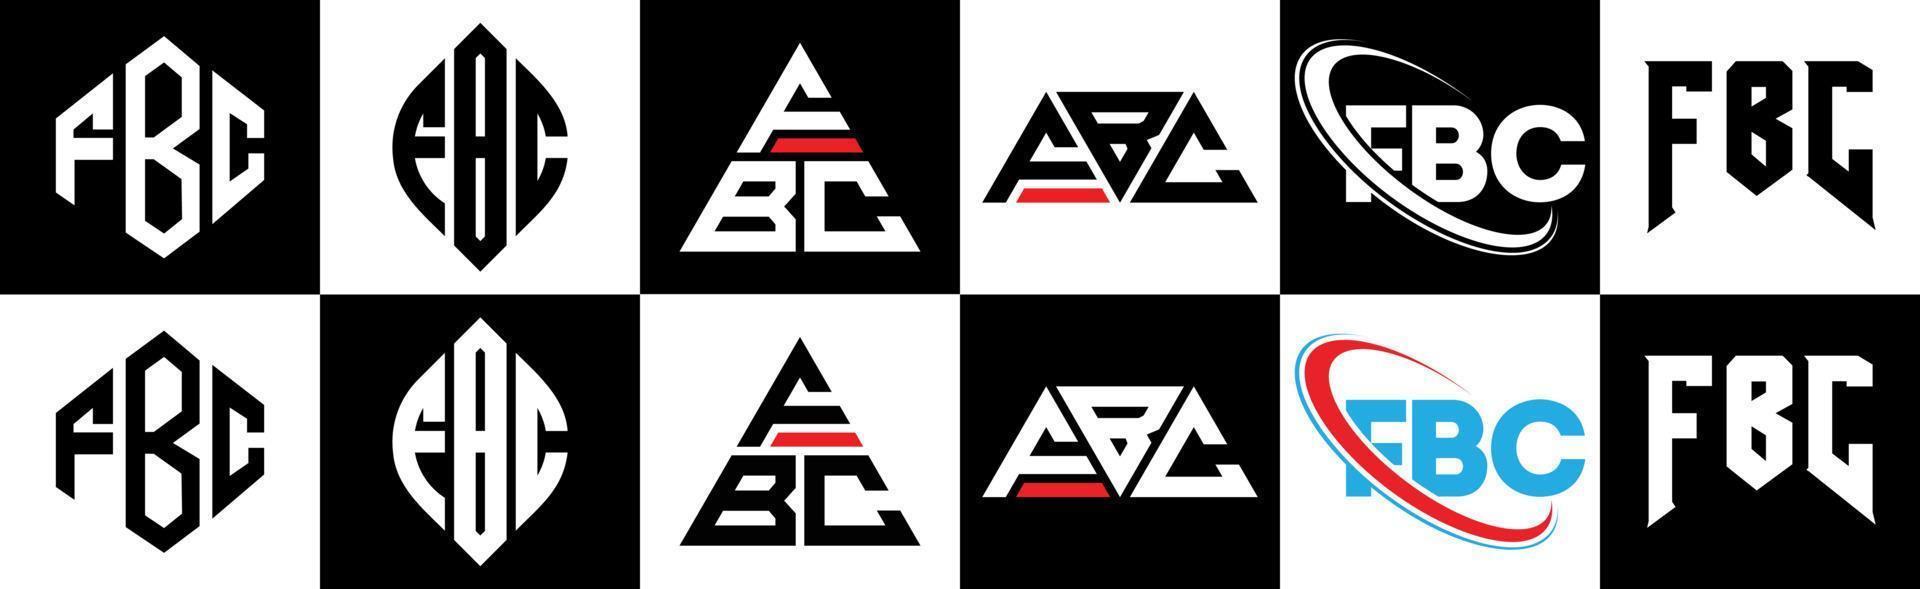 design de logotipo de carta fbc em seis estilos. fbc polígono, círculo, triângulo, hexágono, estilo plano e simples com logotipo de carta de variação de cor preto e branco definido em uma prancheta. fbc logotipo minimalista e clássico vetor